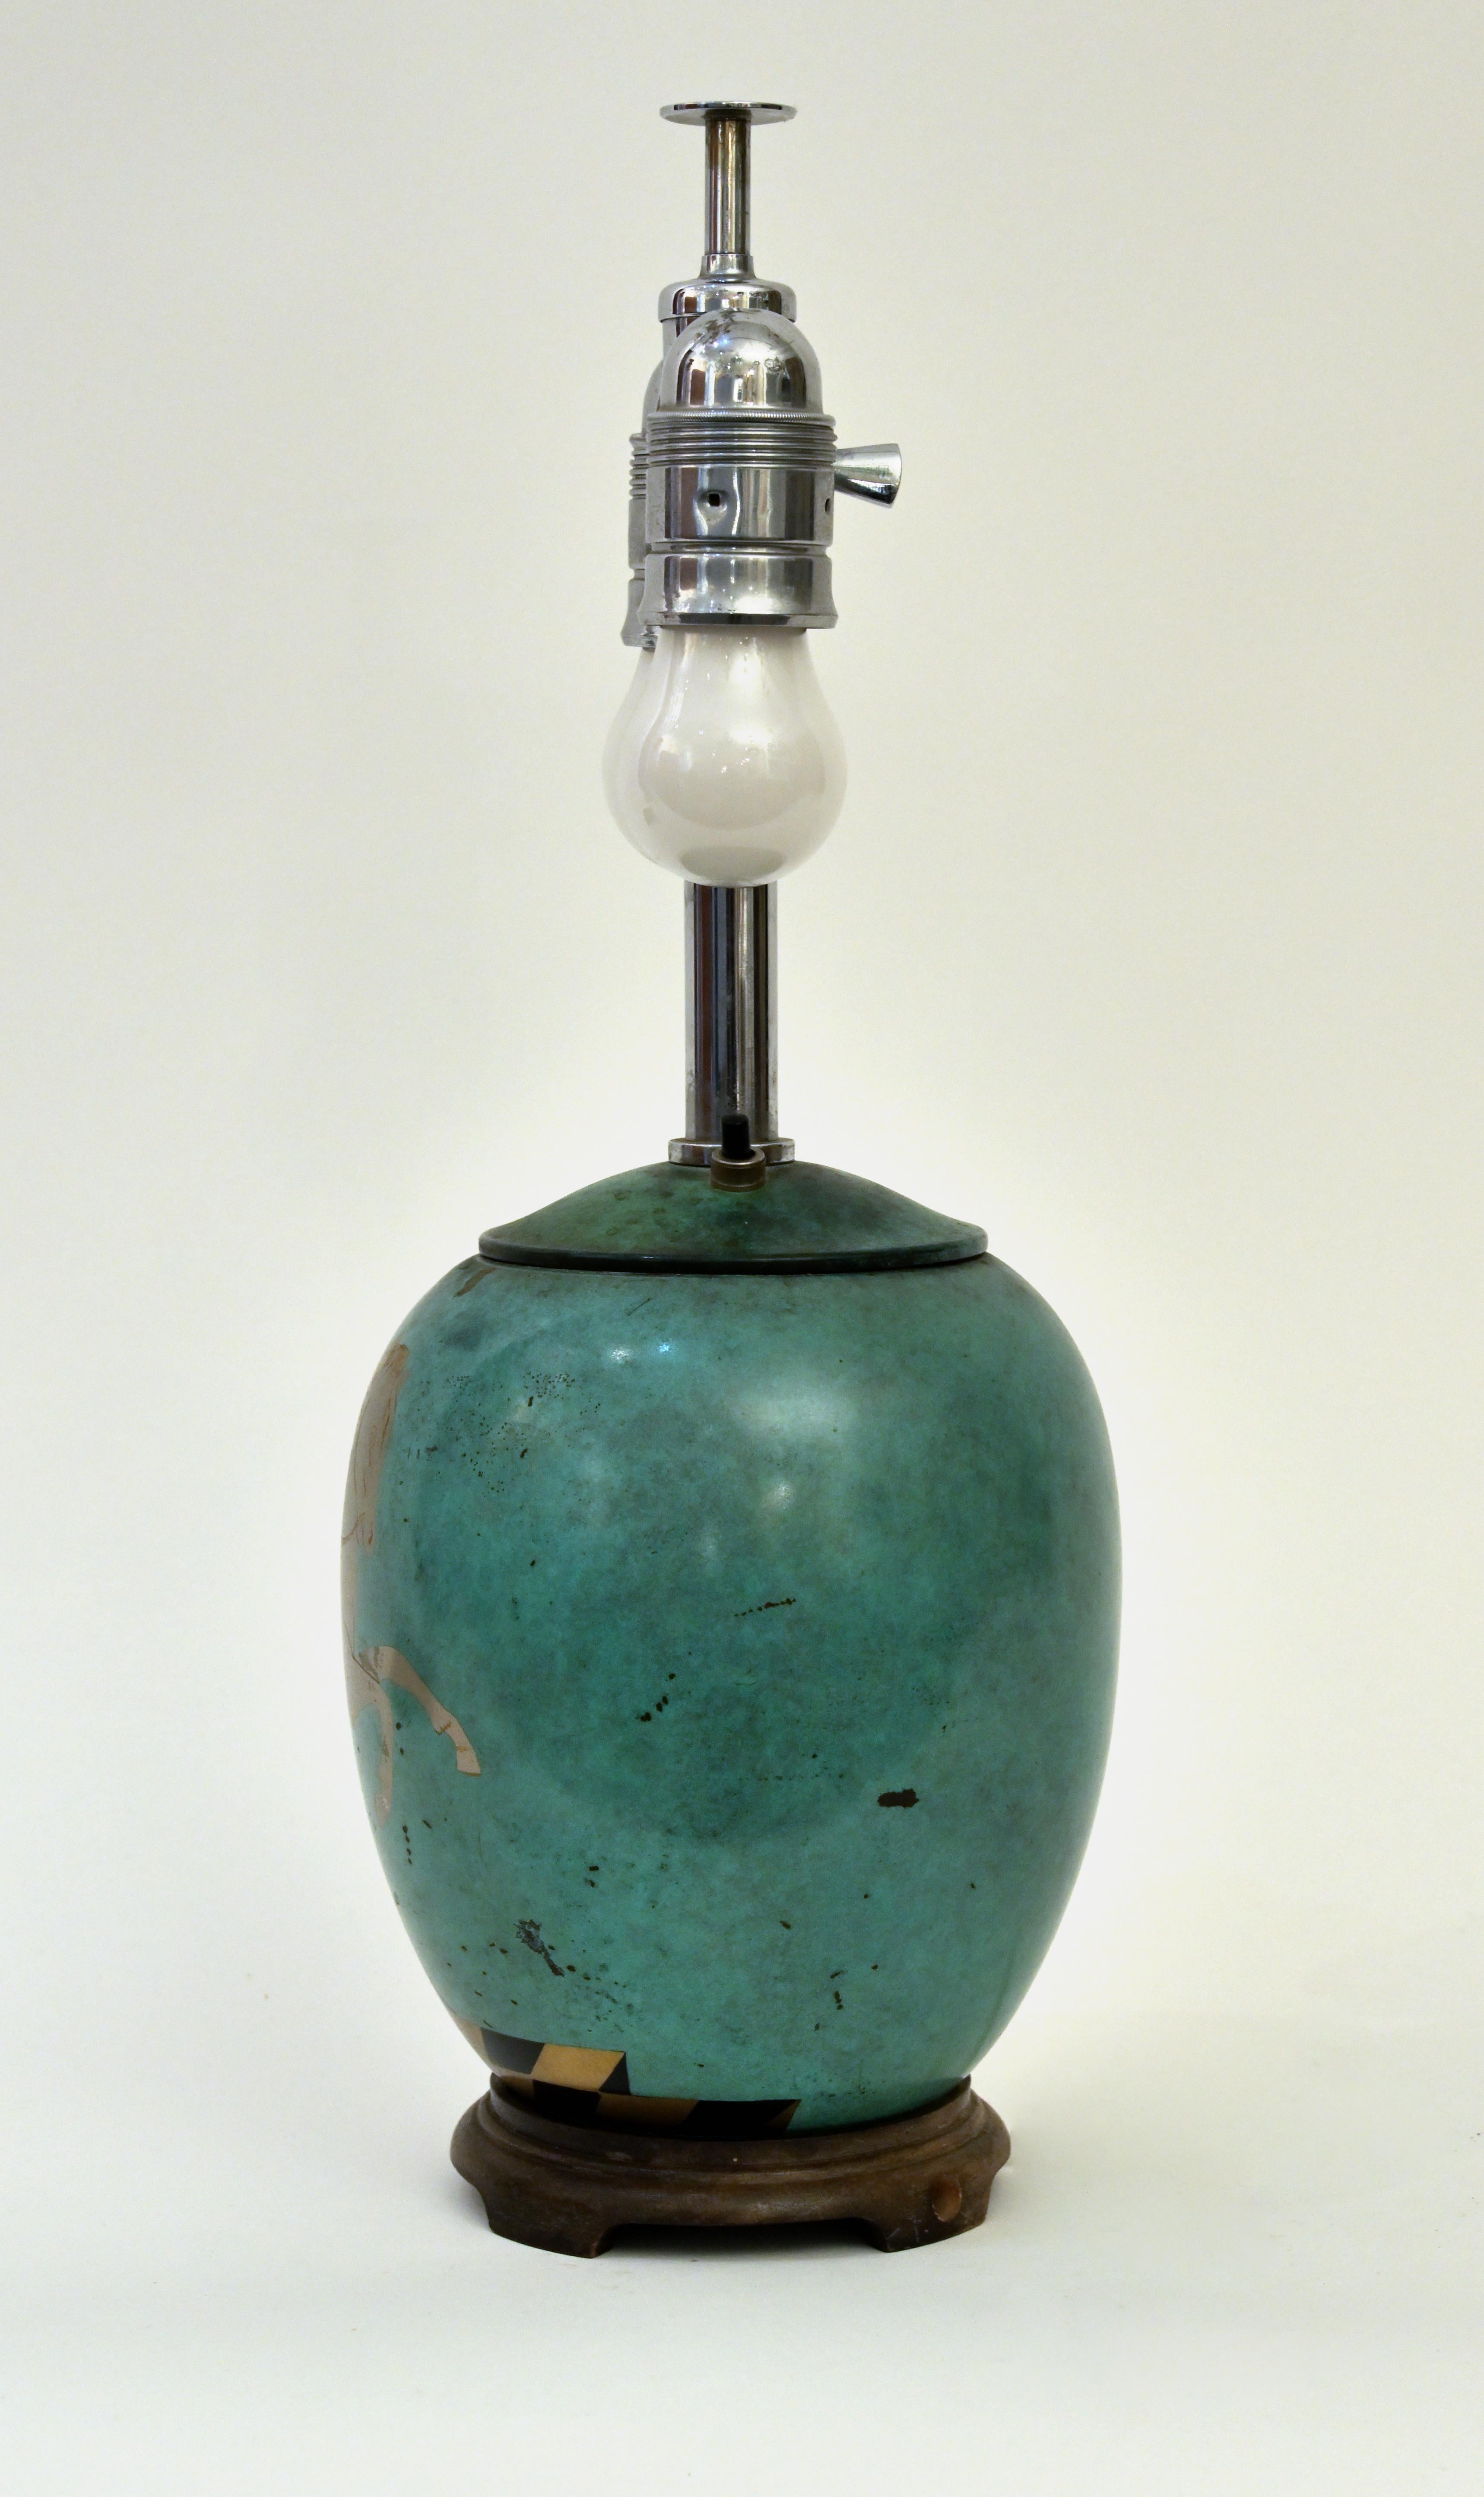 Patinierte Verdigris-Tischlampe „Ikora“ von WMF Company, 1920er Jahre (Neugriechisch)